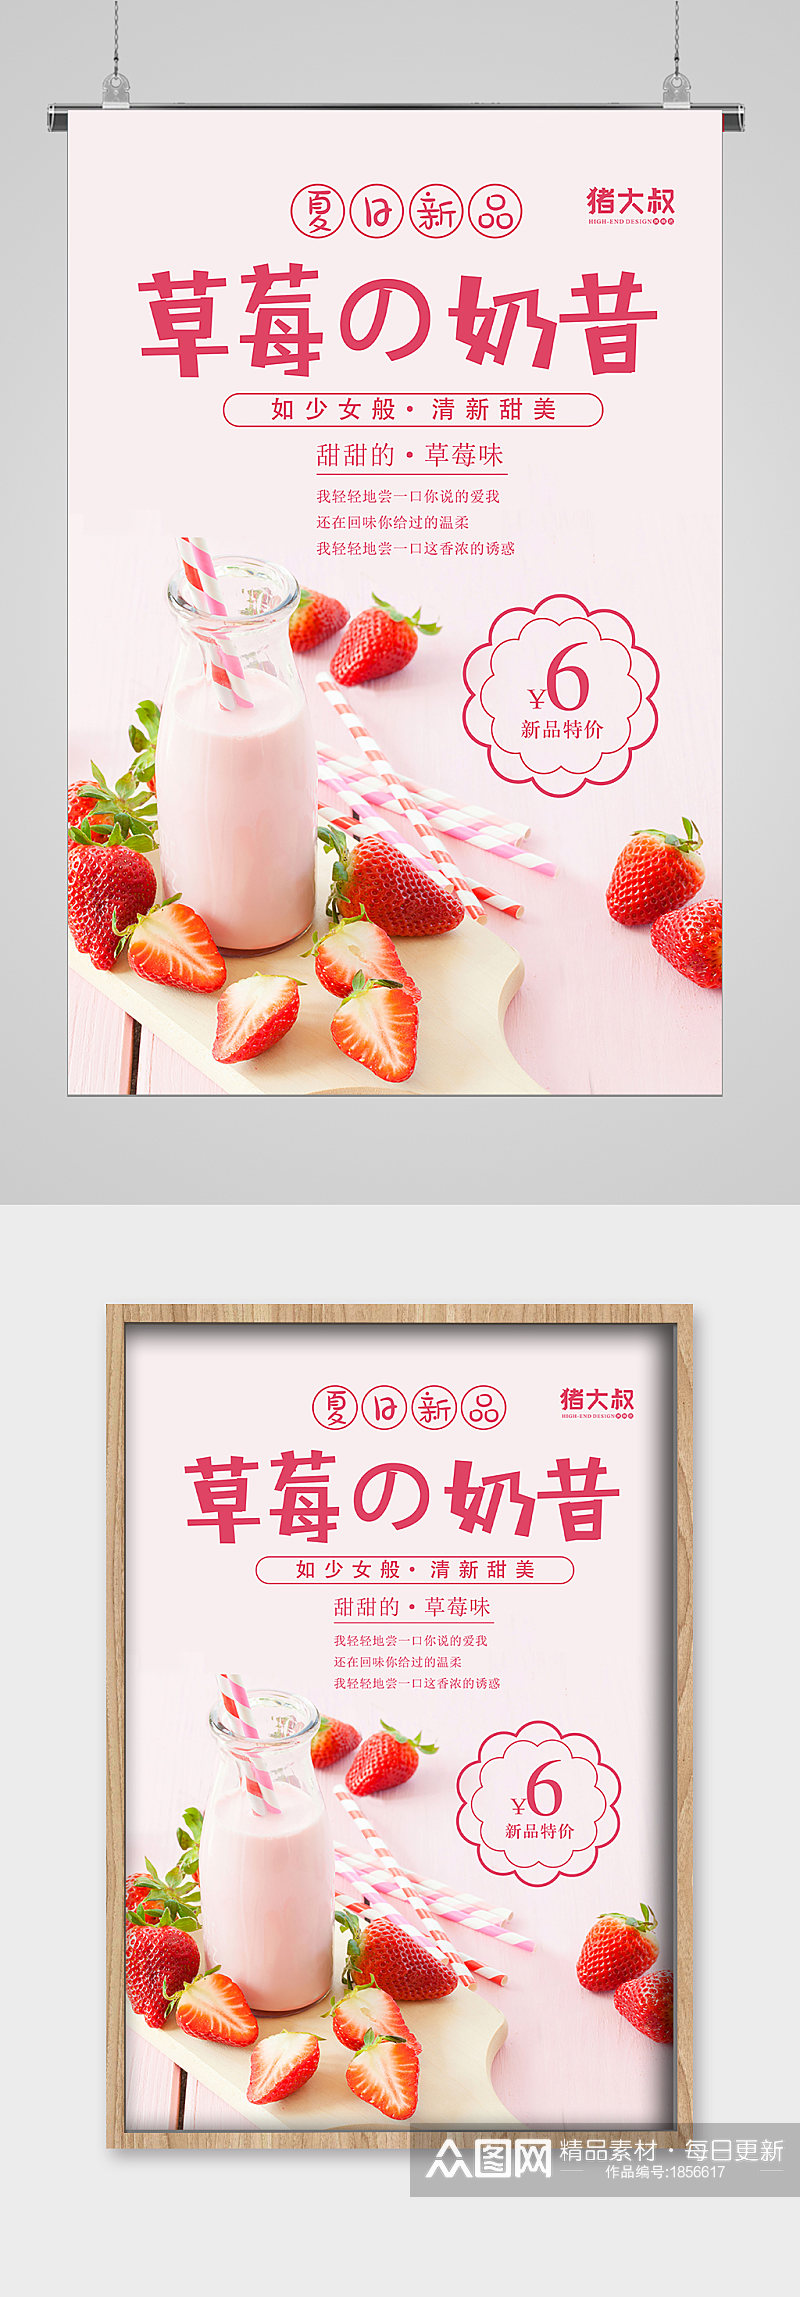 夏日冷饮草莓奶昔宣传海报素材